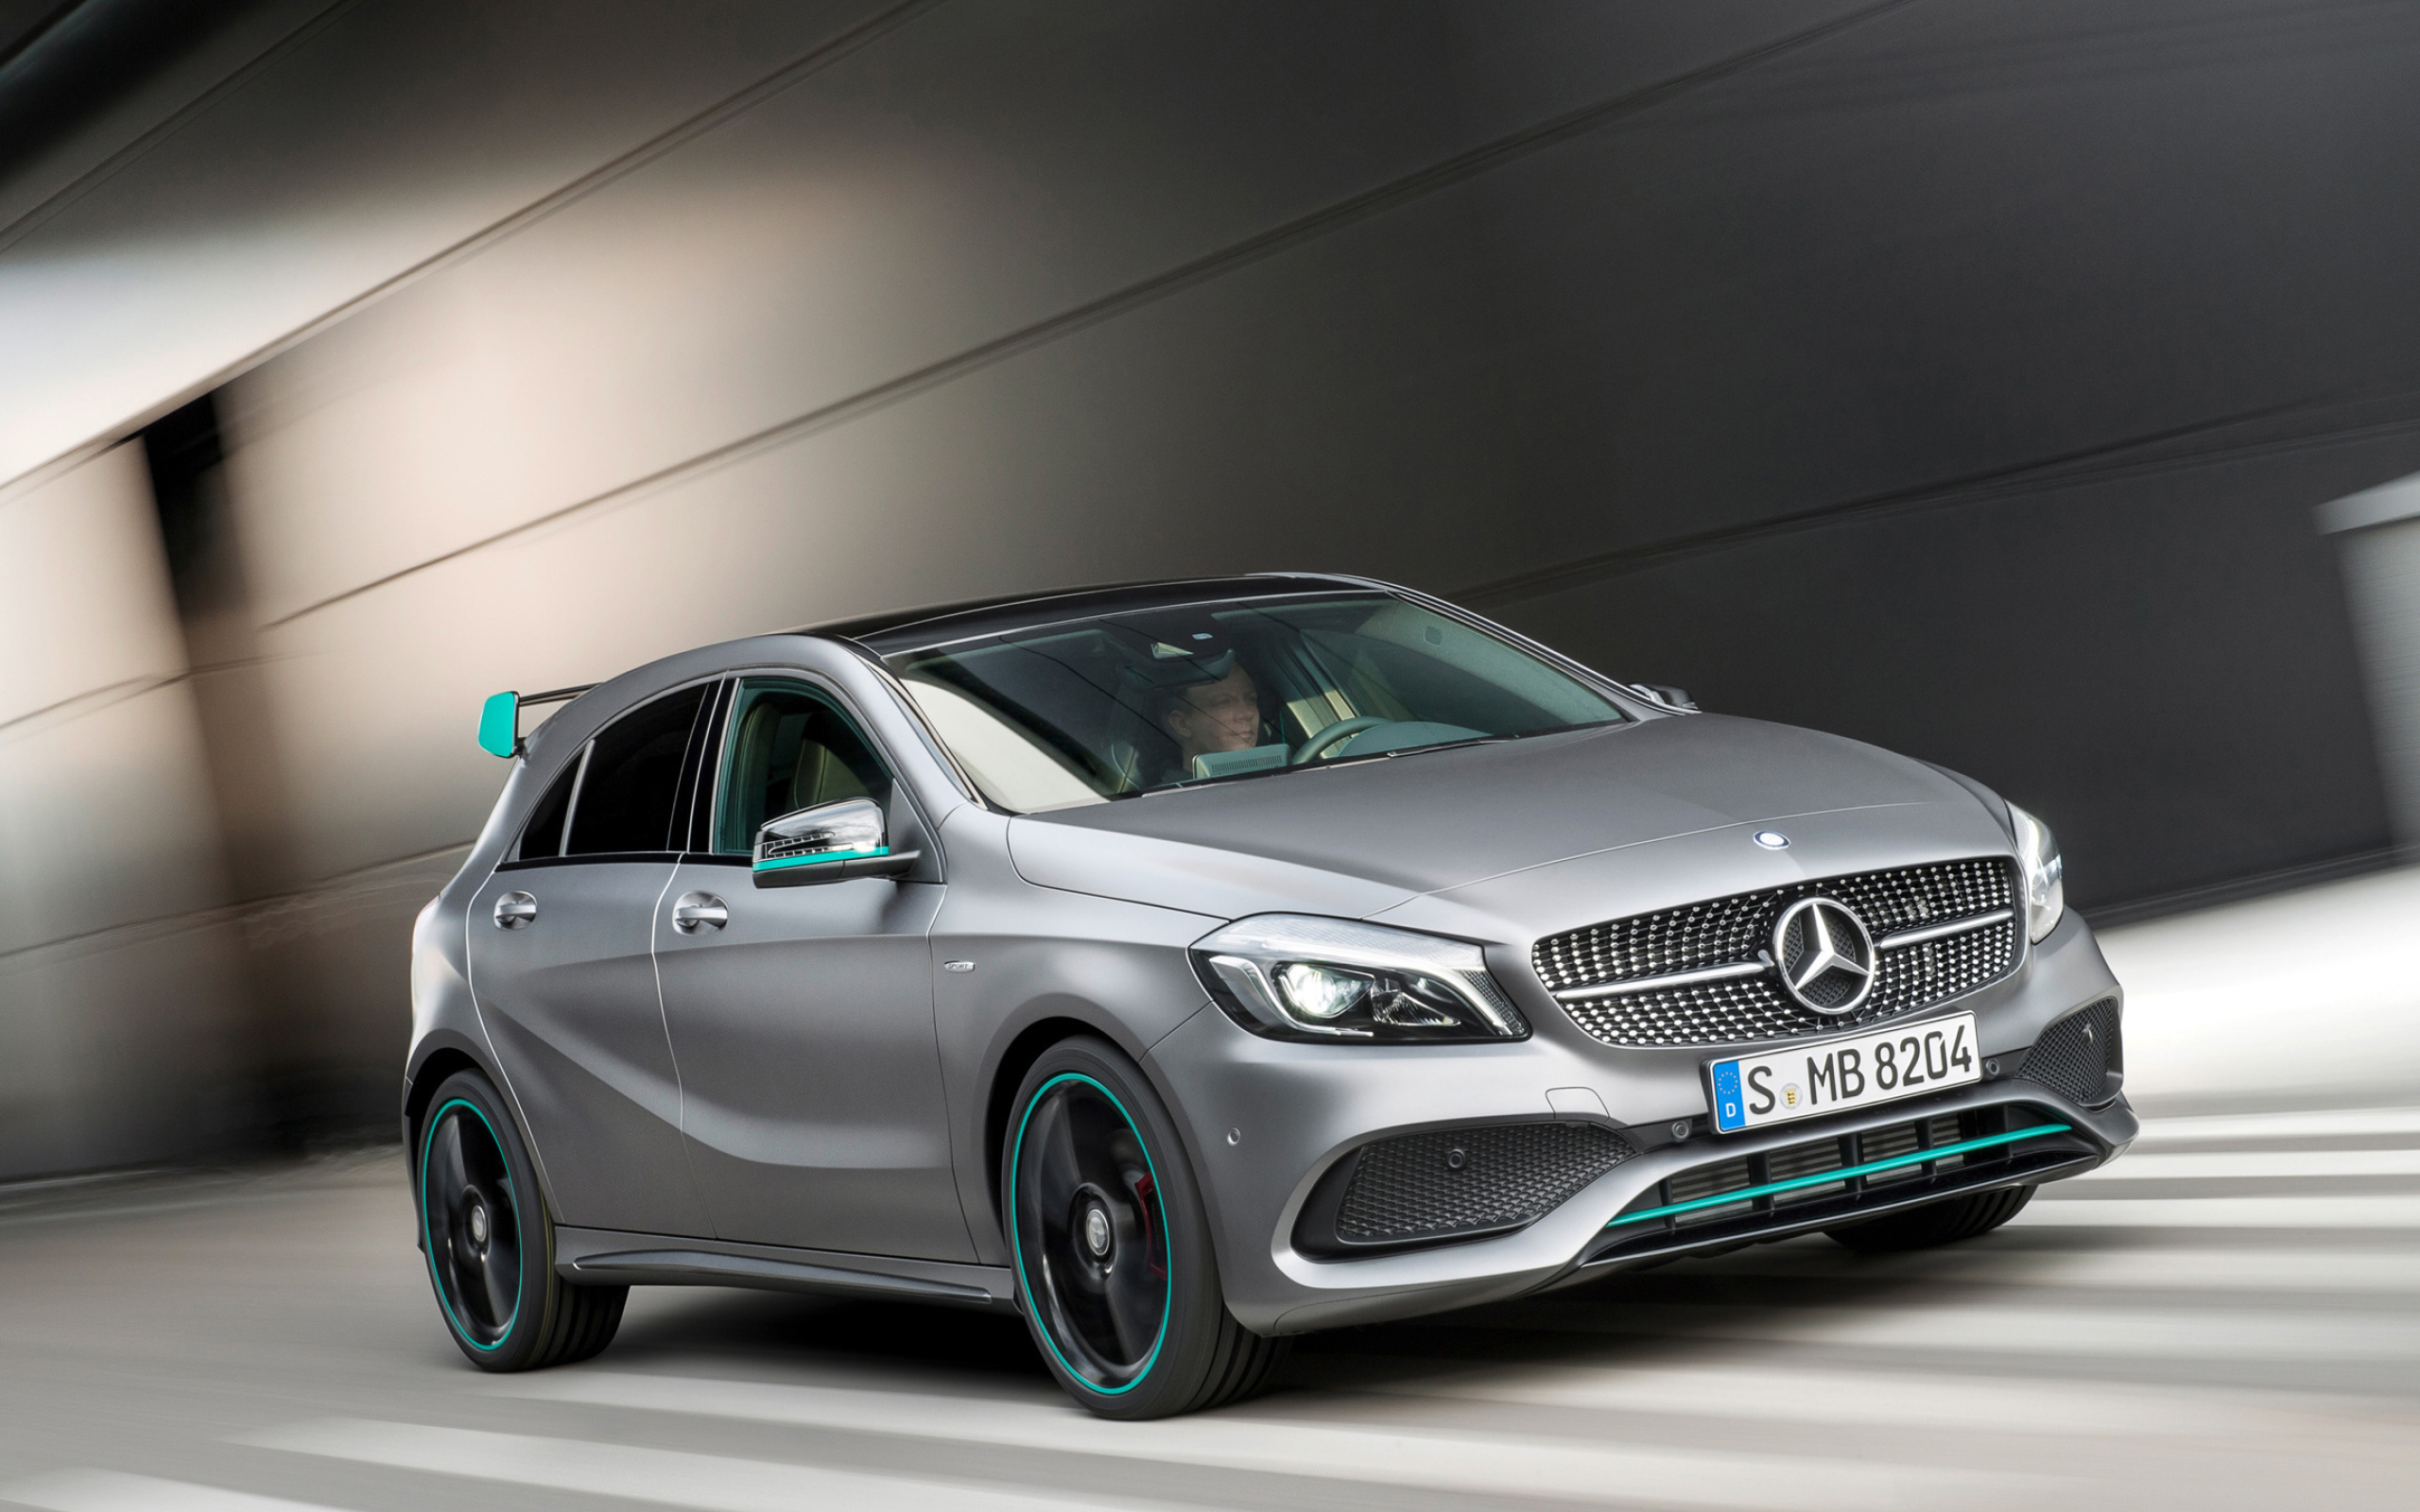 Mercedes-Benz A-Class, Luxury cars, 4K ultra HD, High-quality wallpapers, 2560x1600 HD Desktop